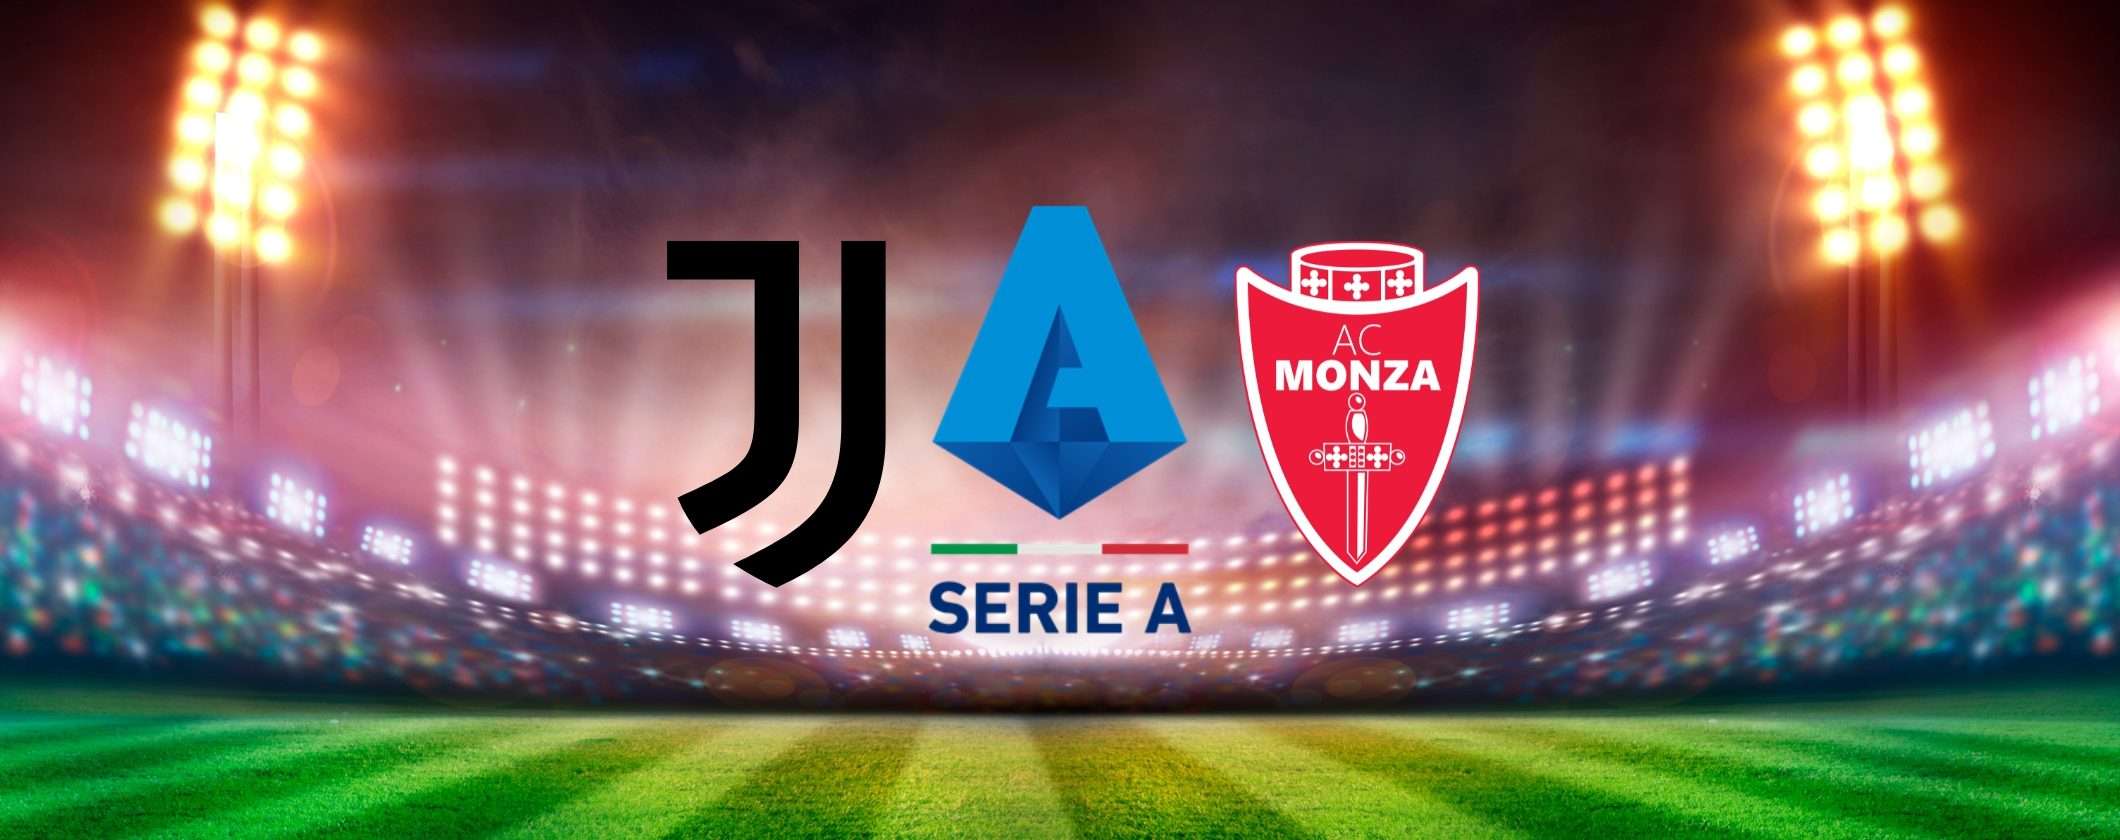 Guarda Juventus-Monza in streaming con queste soluzioni